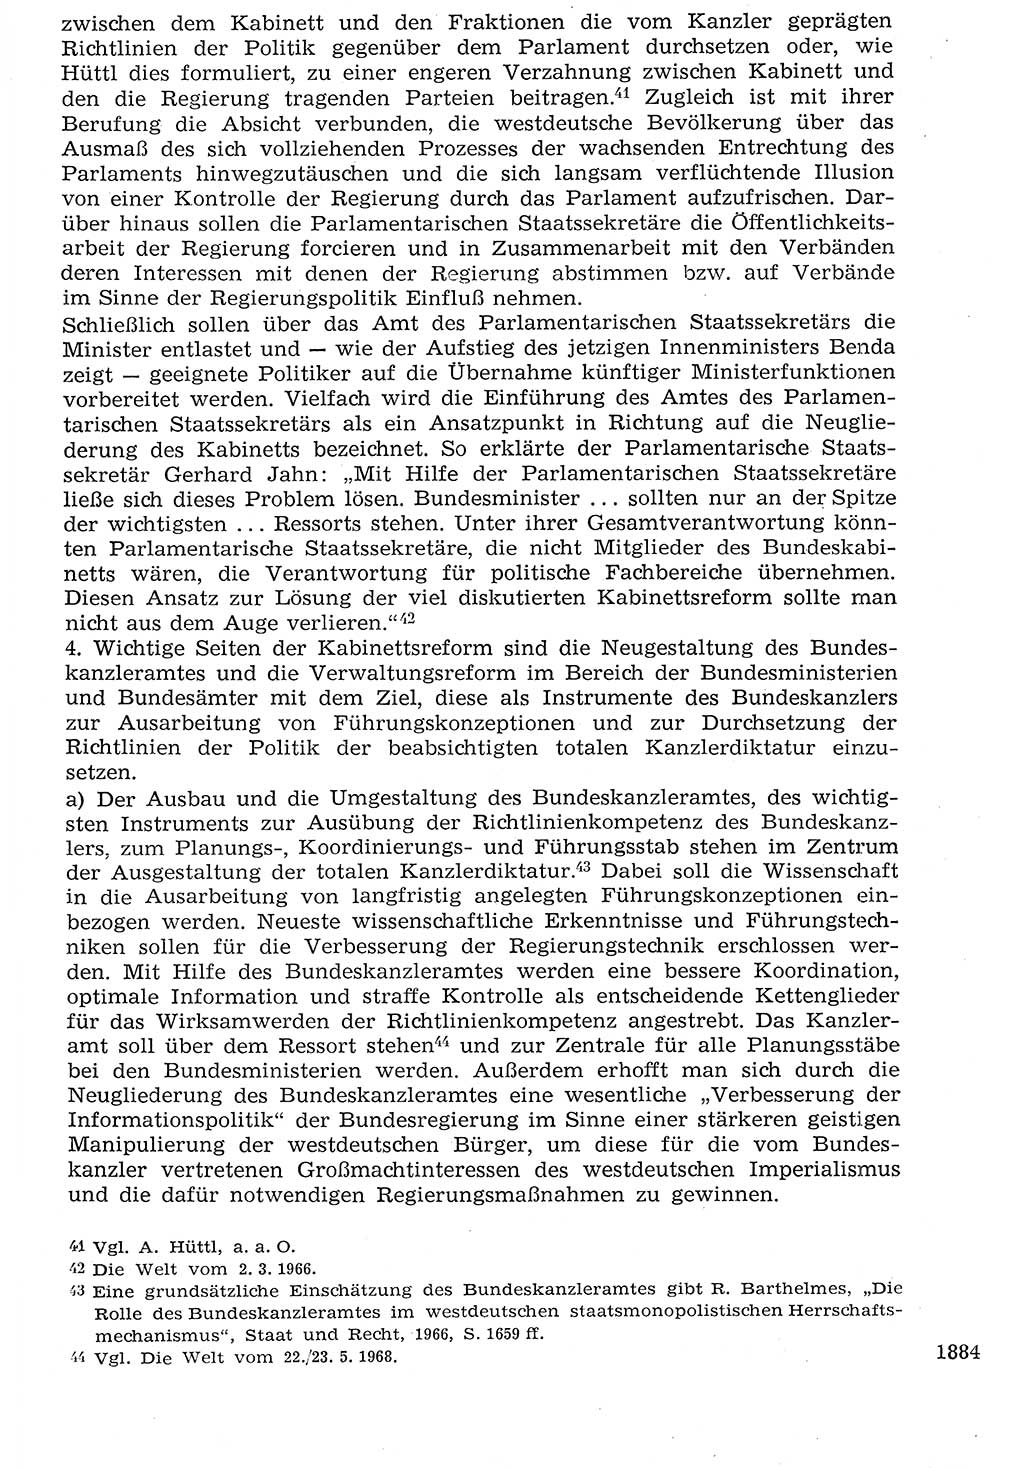 Staat und Recht (StuR), 17. Jahrgang [Deutsche Demokratische Republik (DDR)] 1968, Seite 1884 (StuR DDR 1968, S. 1884)